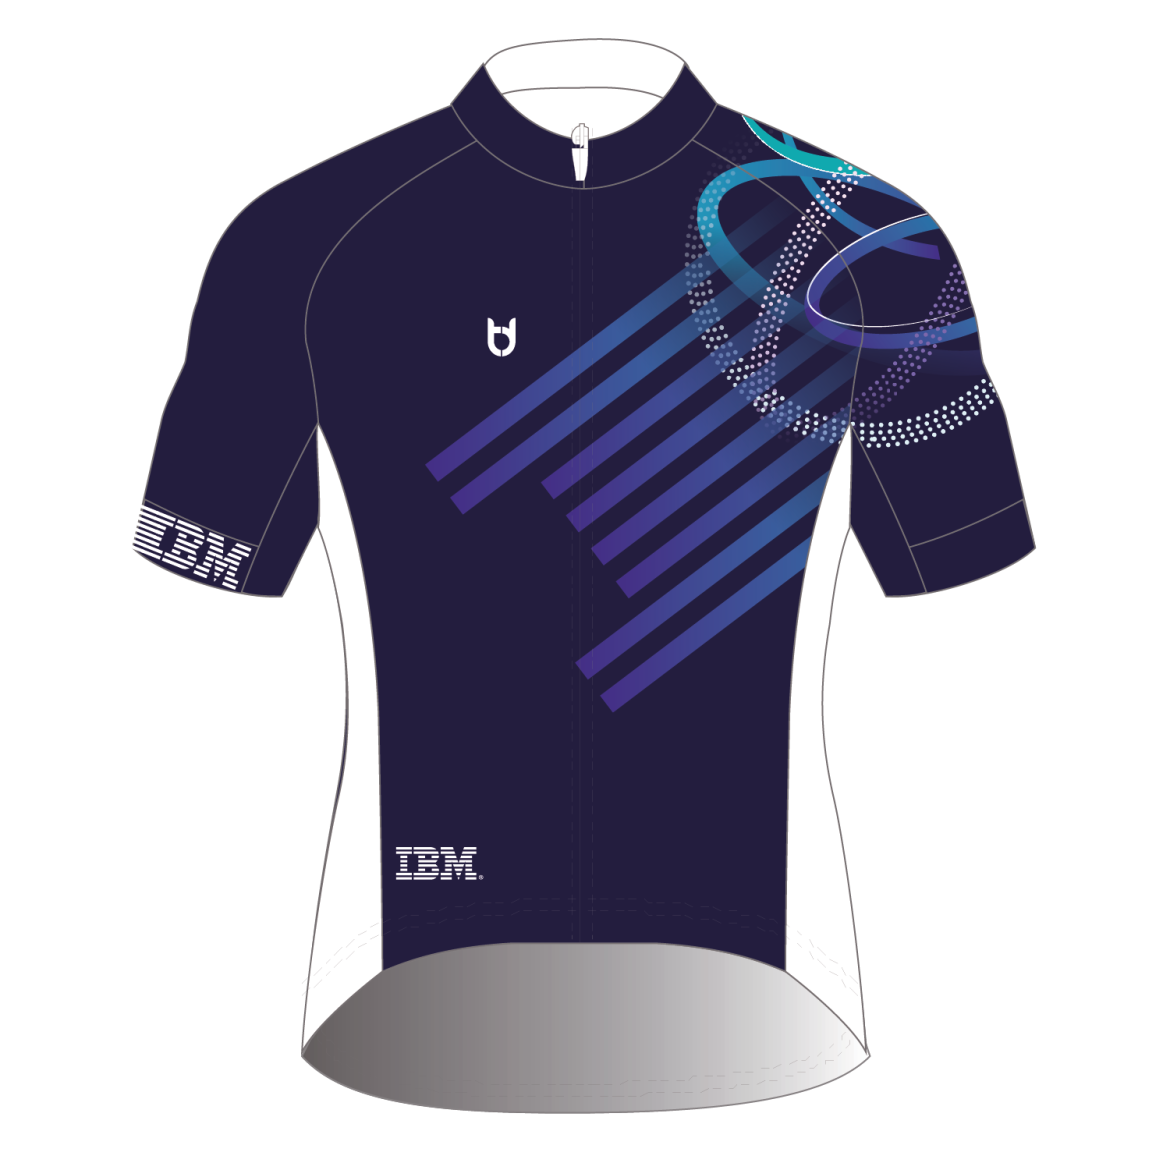 IBM wielershirt bestellen